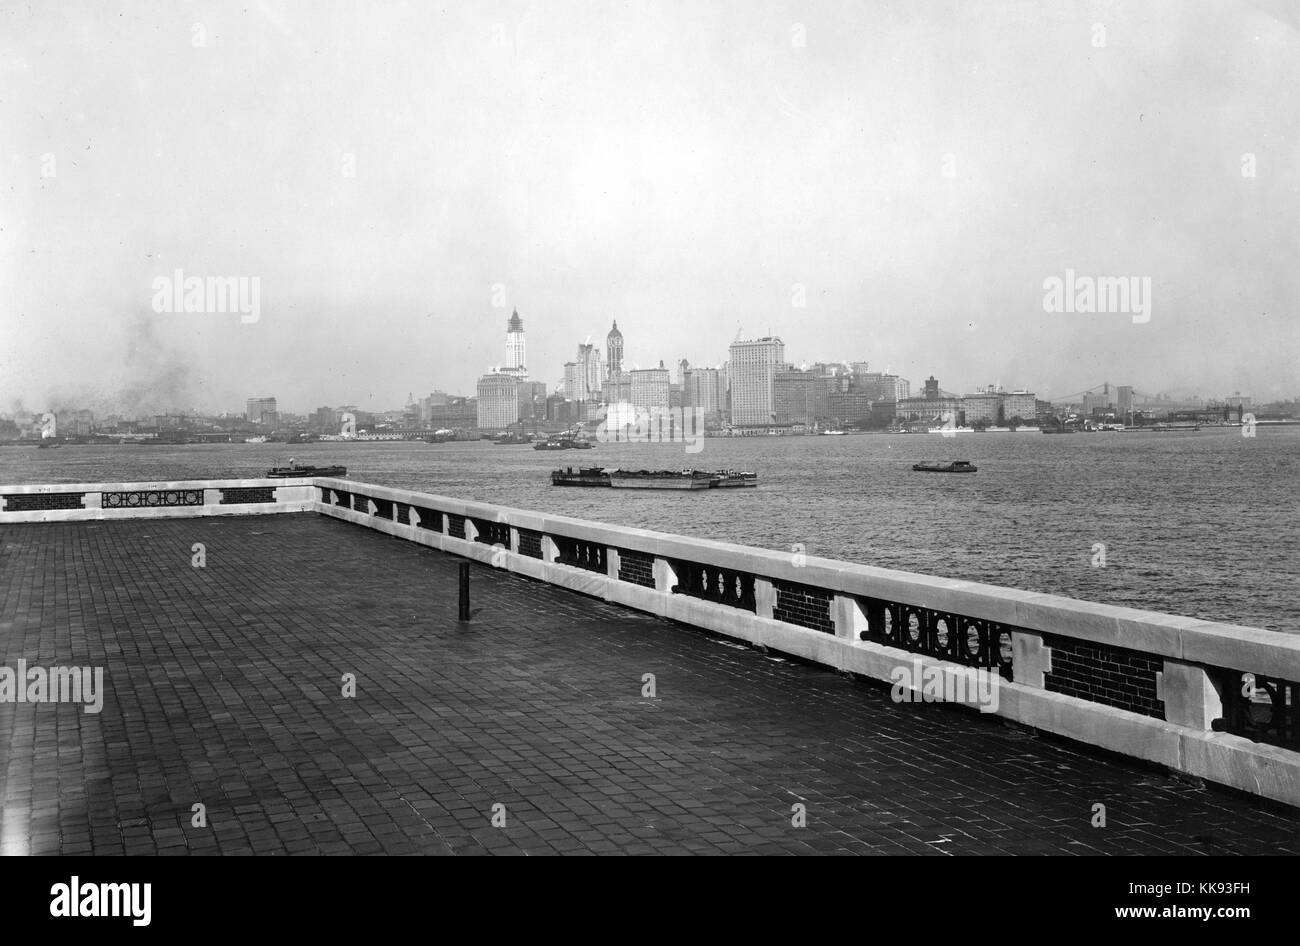 Fotografia in bianco e nero con vista dello skyline di New York City dal tetto di osservazione in cima alla stazione di immigrazione di Ellis Island, da Edwin Levick, Ellis Island, New York, 1907. Dalla Biblioteca Pubblica di New York. Foto Stock